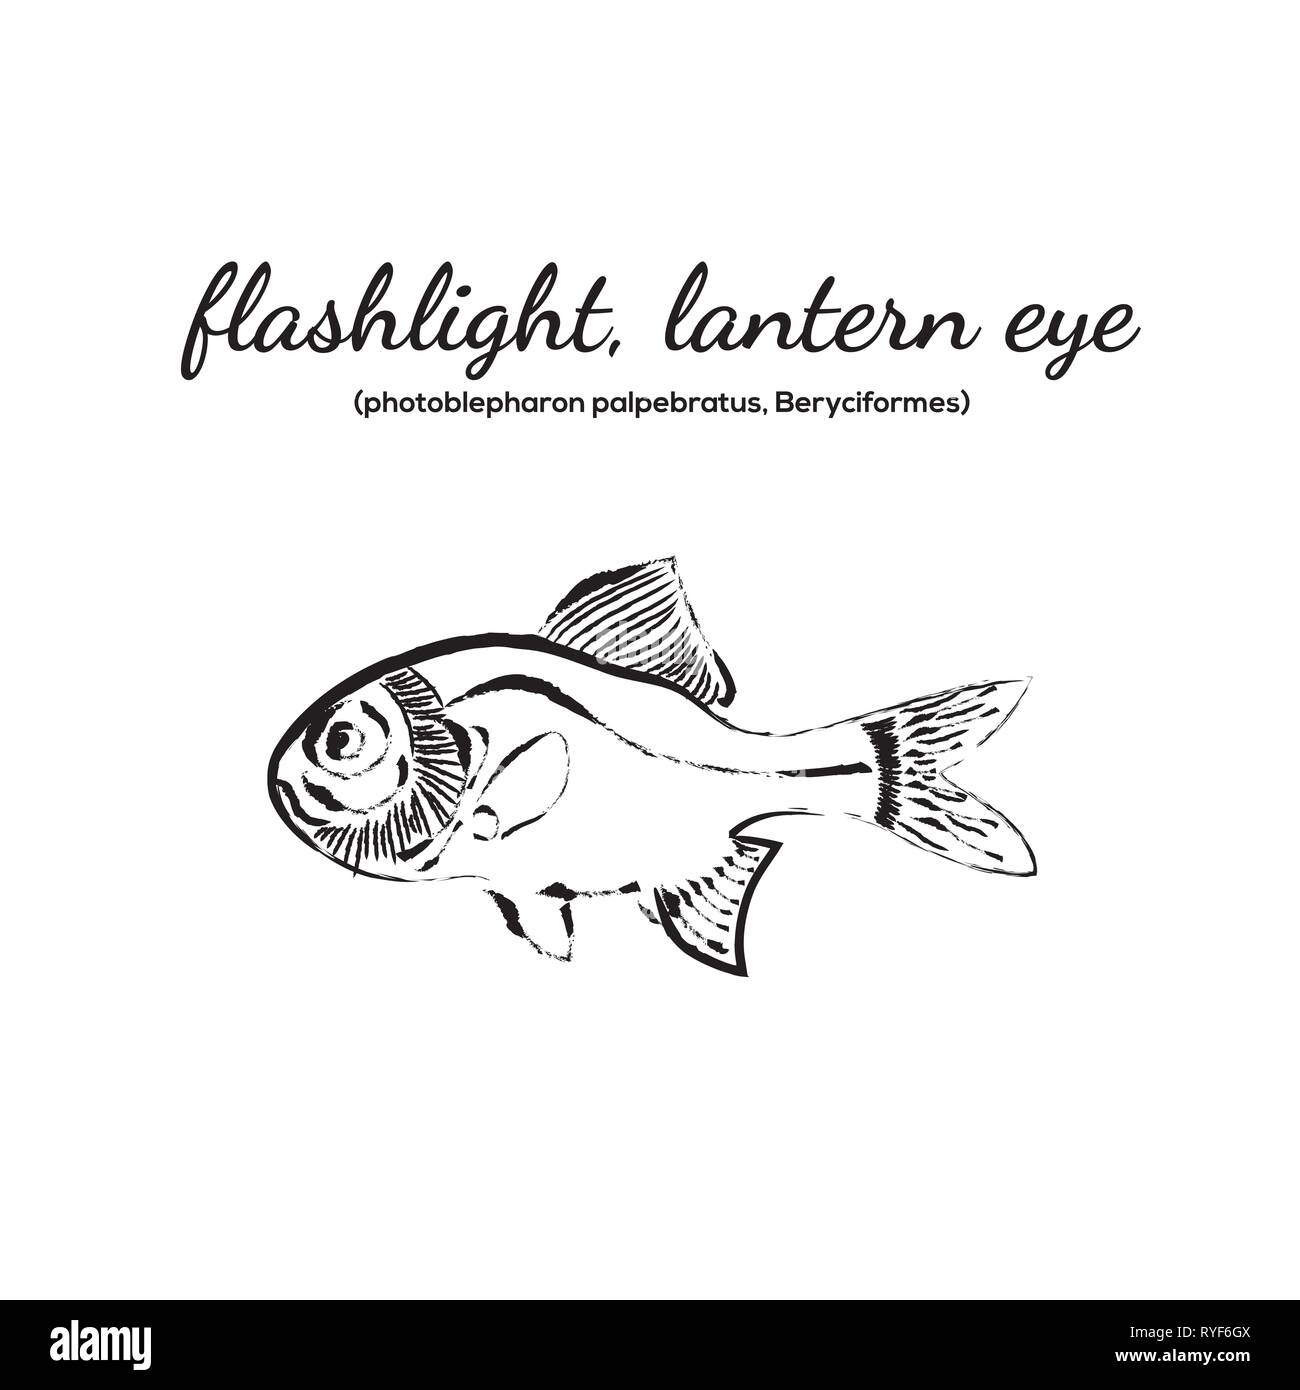 Flashlight fish, lantern eye fish vector illustration Stock Vector